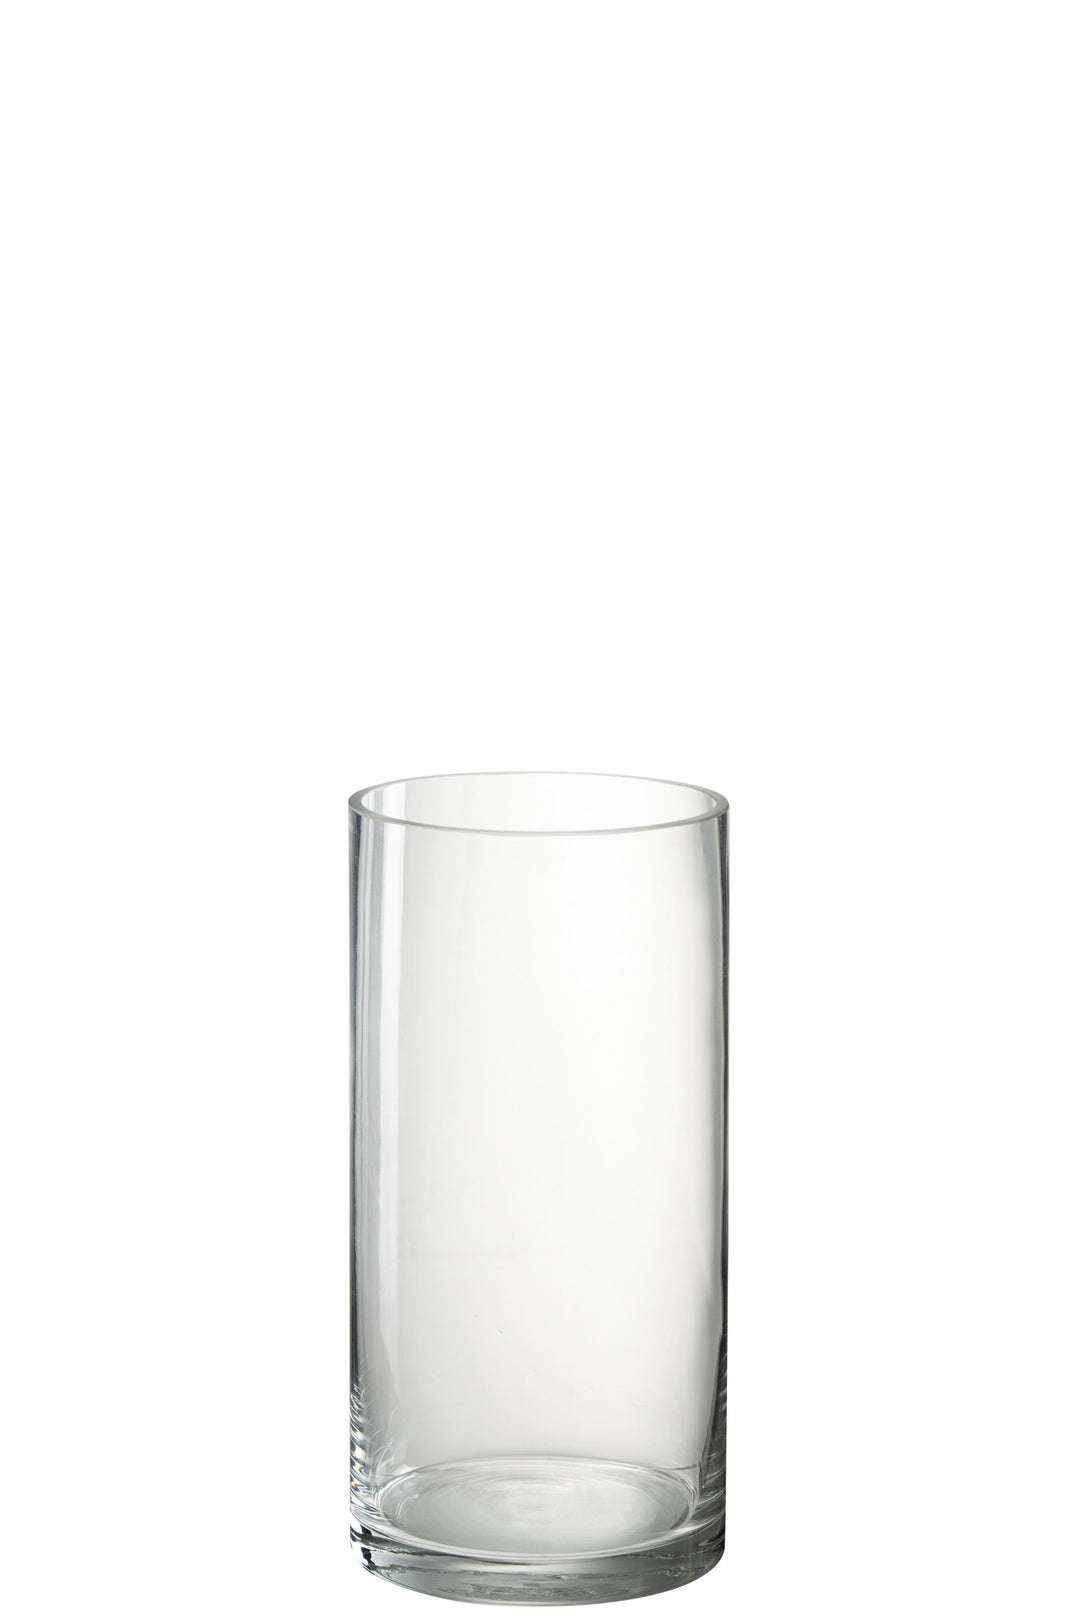 J-Line by Jolipa VASE CYLINDER VOLA GLASS TRANSPARENT LARGE